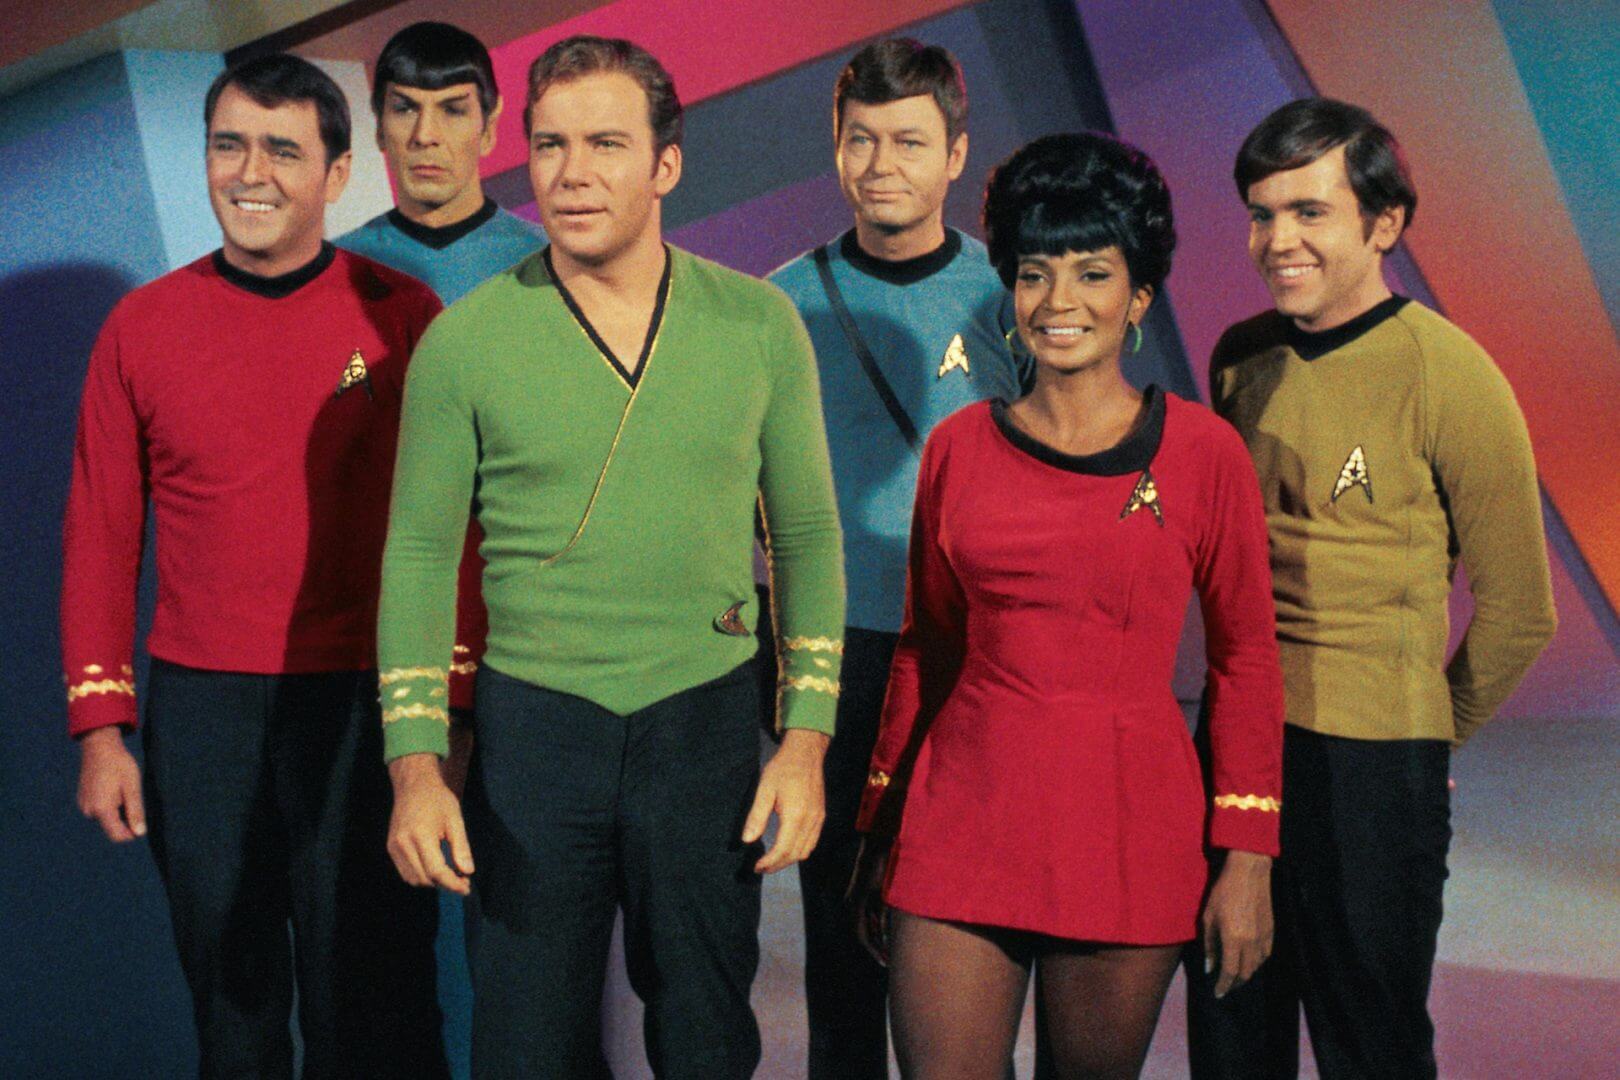 Teaser for New Star Trek TV Series Released